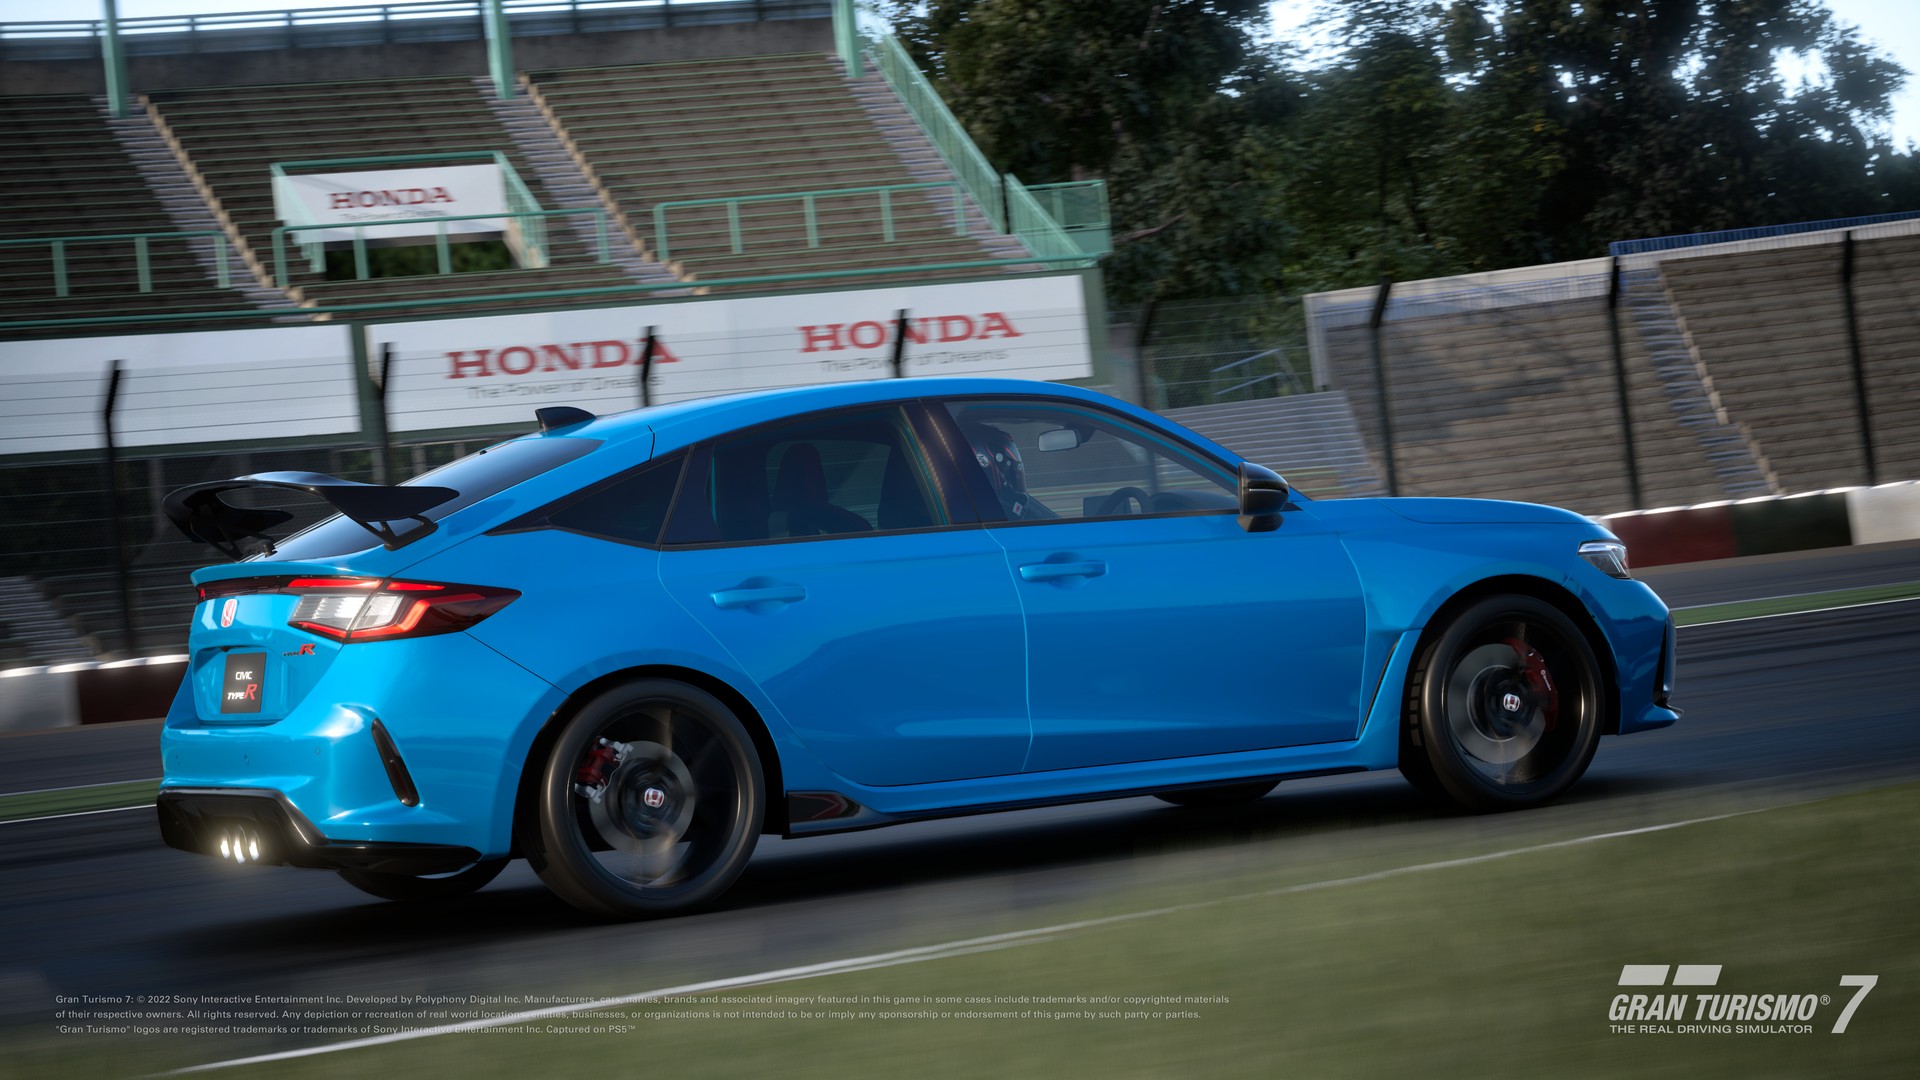 Apresentamos a atualização de setembro de Gran Turismo 7: Adicionamos 3  novos carros , incluindo um carro de corrida Mazda Gr.4! - RodasPresas